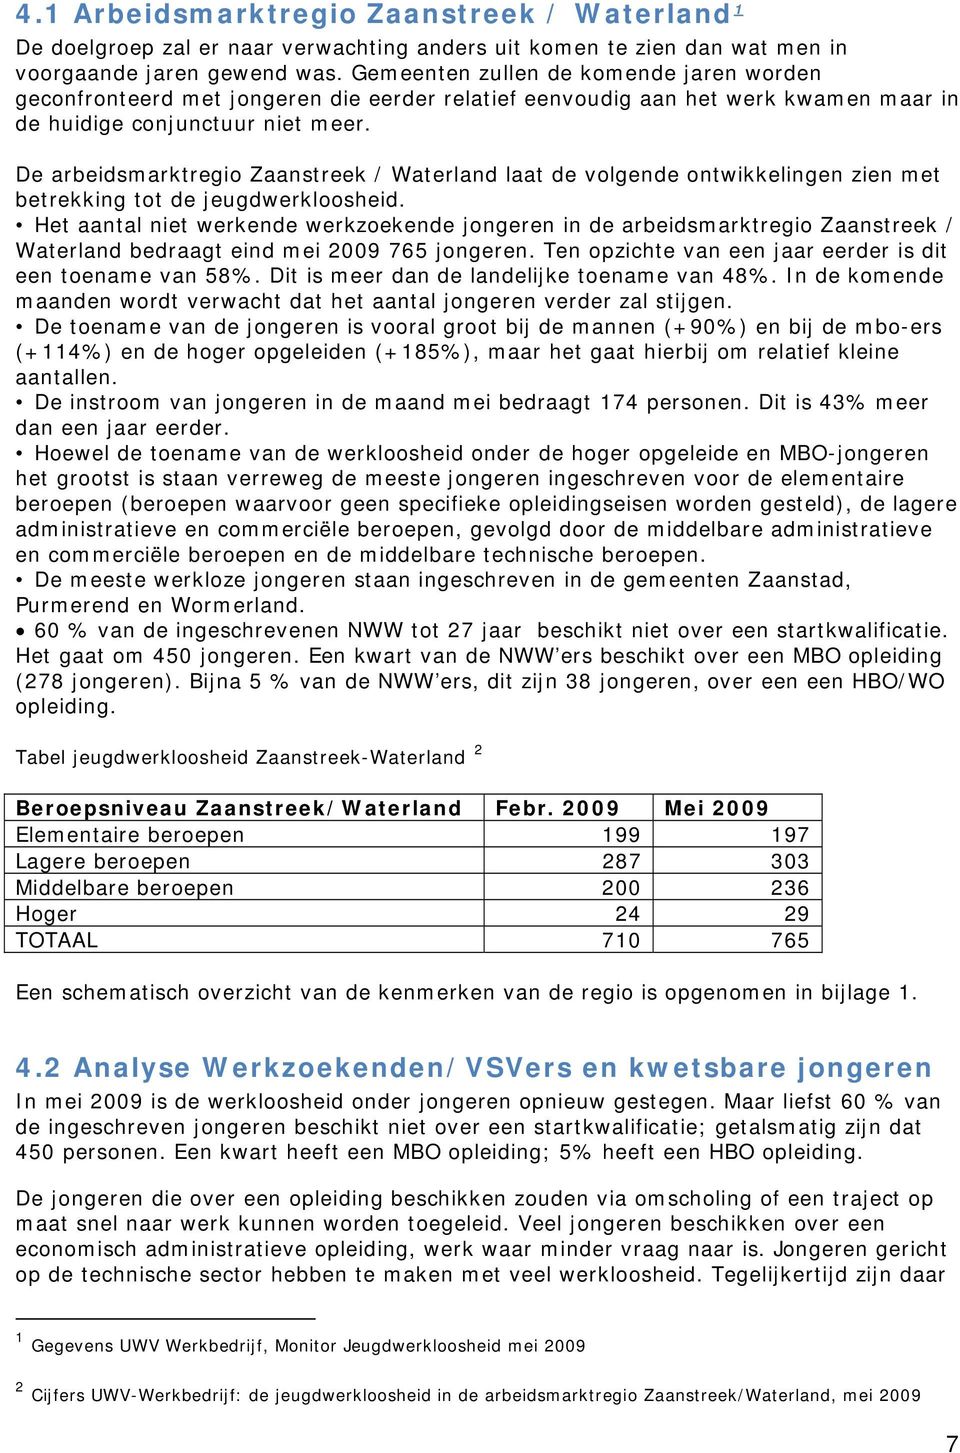 De arbeidsmarktregio Zaanstreek / Waterland laat de volgende ontwikkelingen zien met betrekking tot de jeugdwerkloosheid.